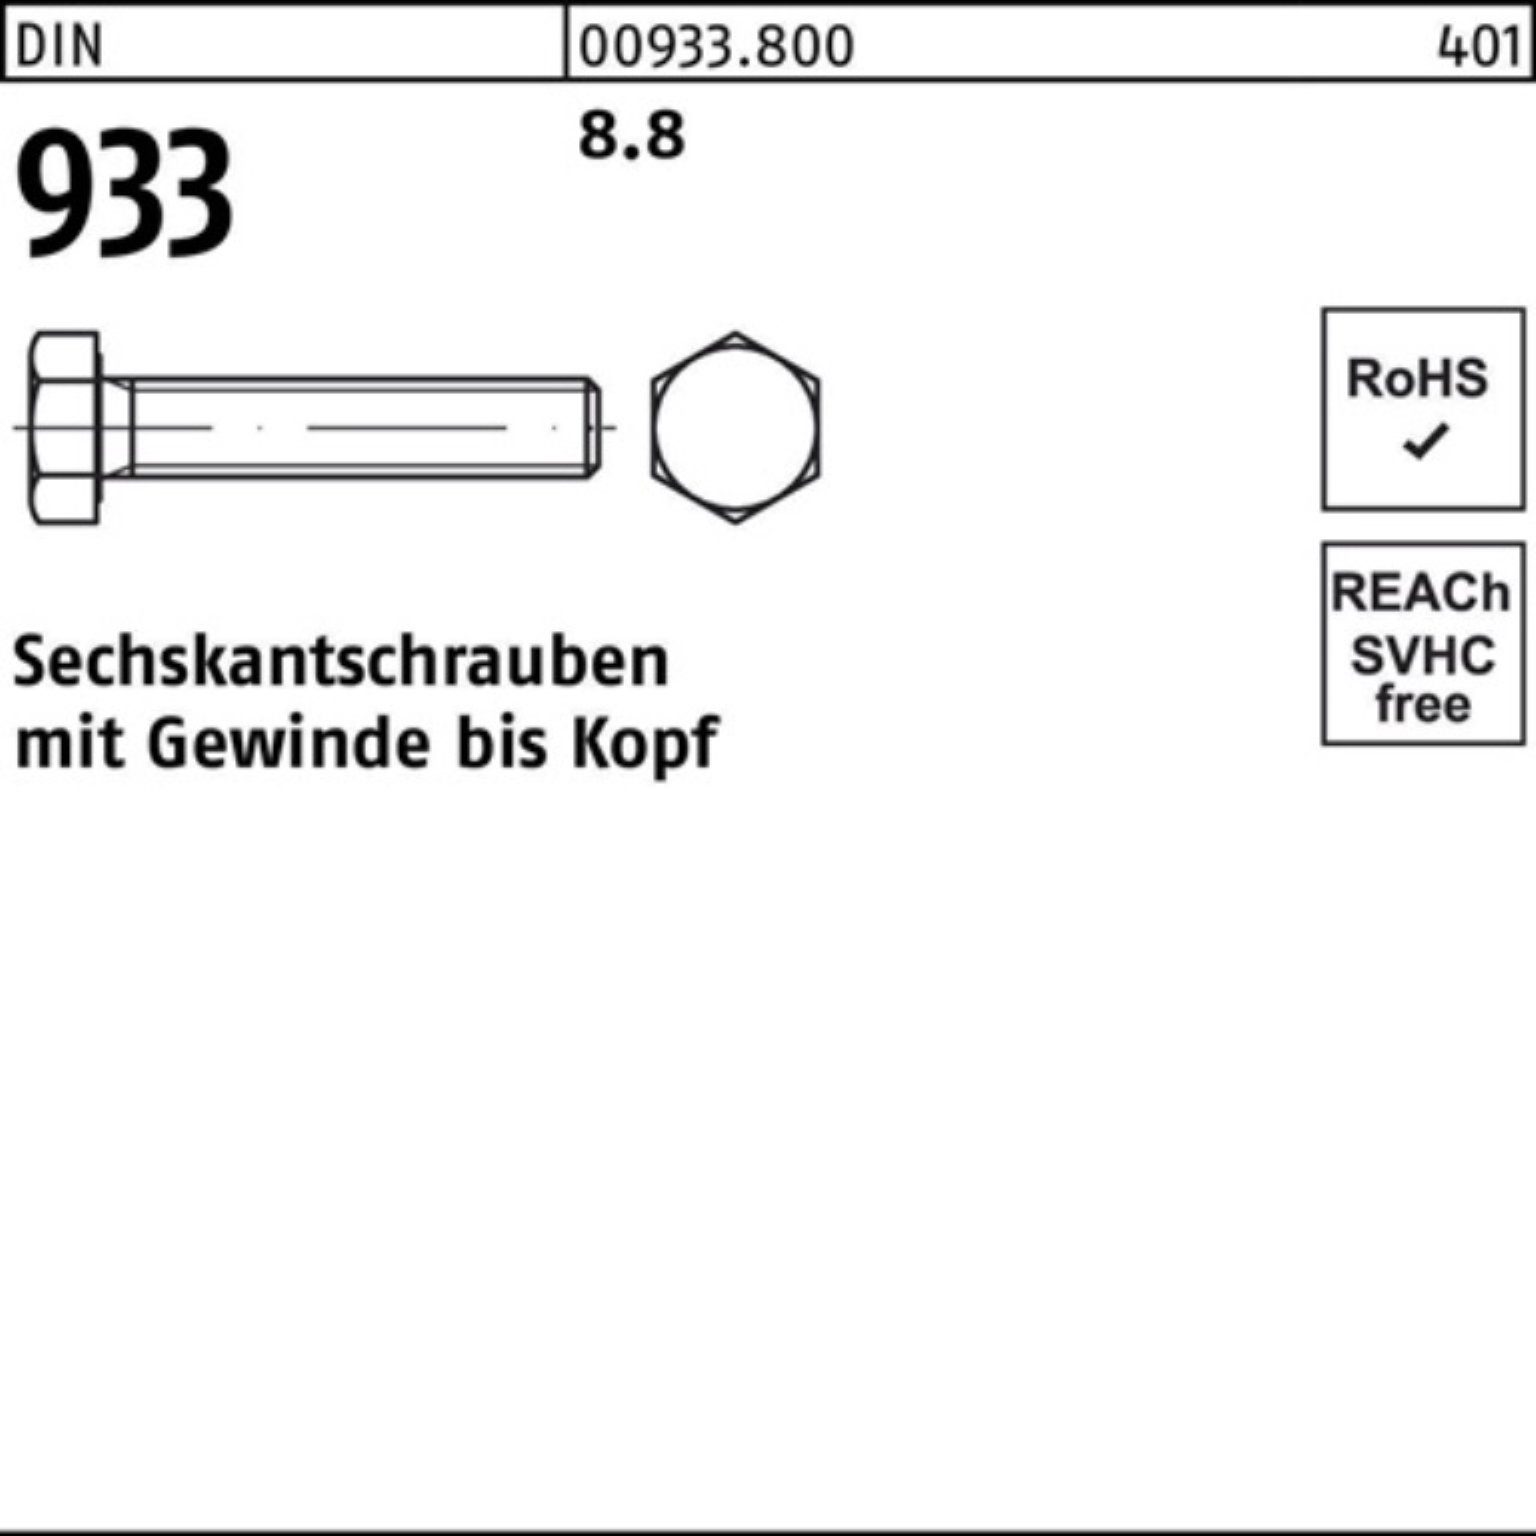 200er DIN VG 200 18 Stück Reyher M10x Pack DIN 933 8.8 933 Sechskantschraube Sechskantschraube